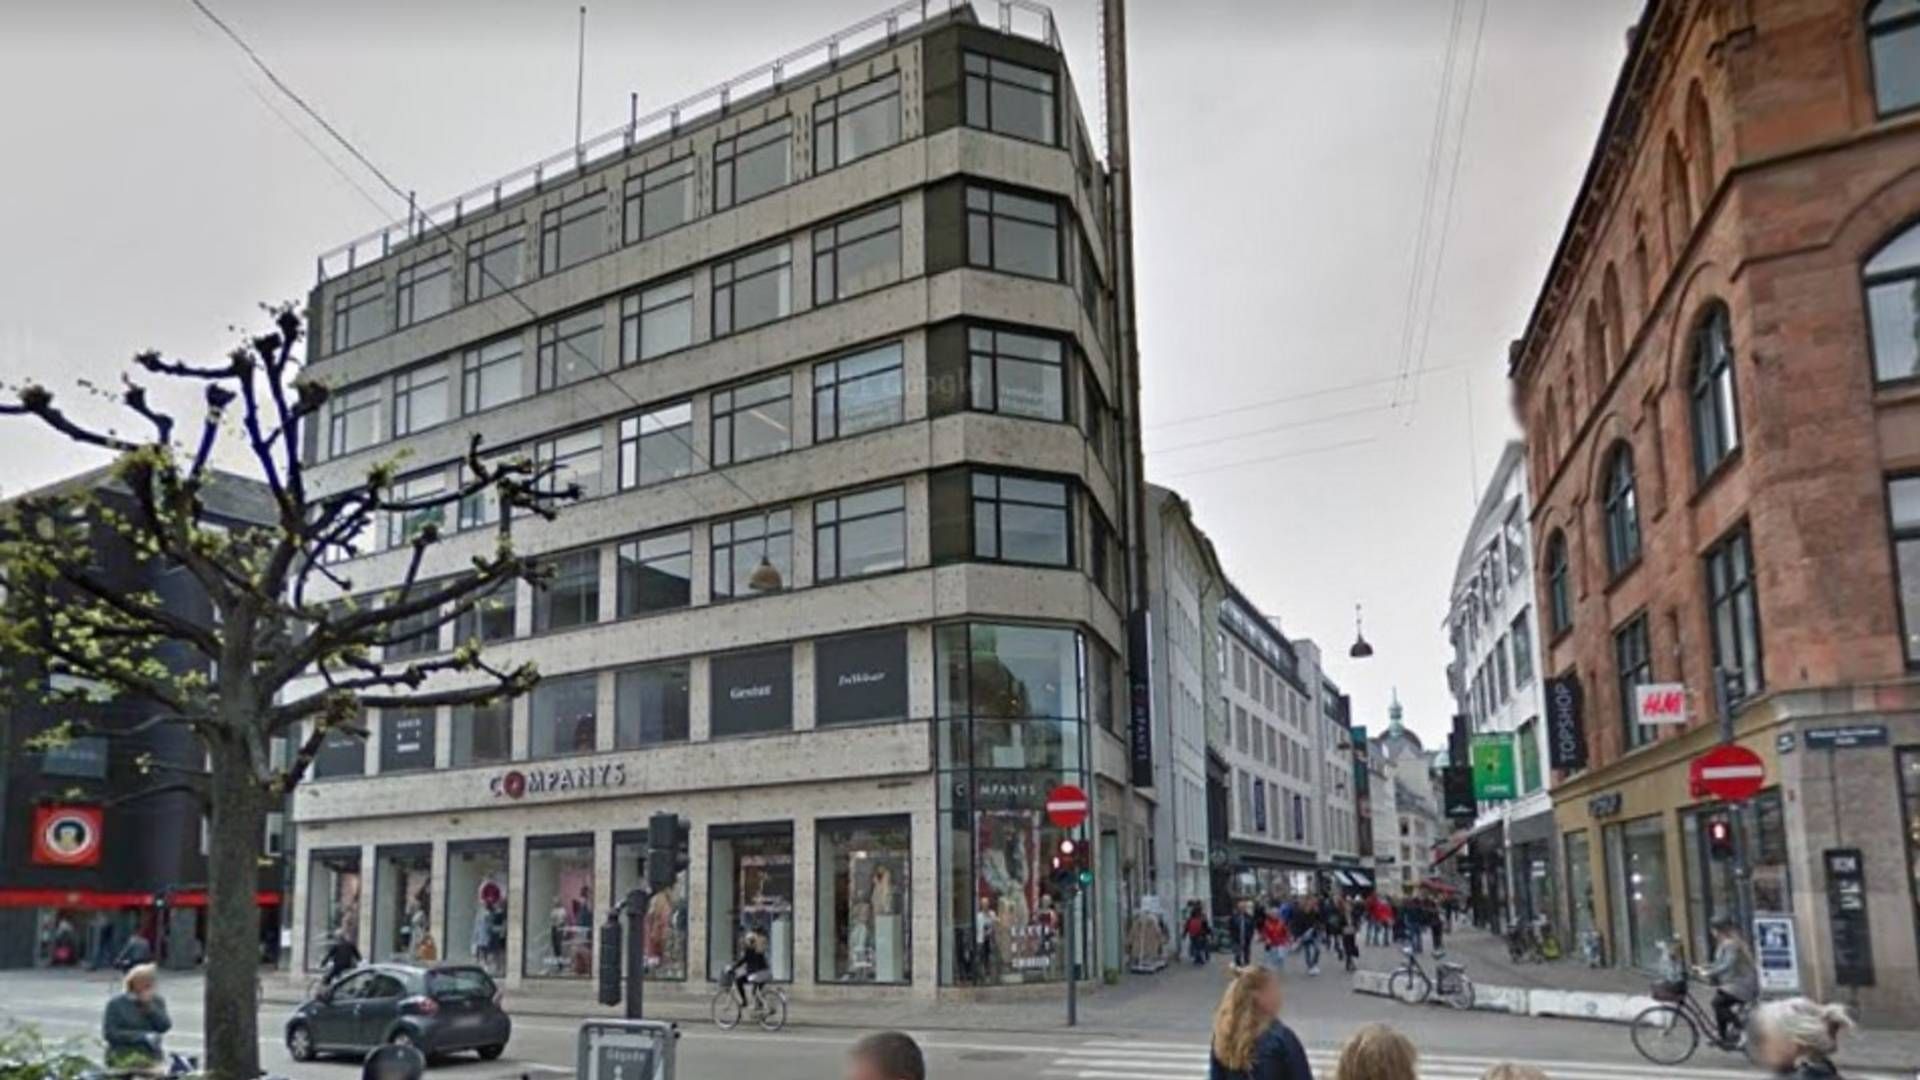 Aage Bangs Fonds største aktiv er ejendommen Østergade 27 på Strøget i København, hvor den tidligere formands søn har stået i spidsen for et stort renoverings- og forbedringsprojekt i de seneste år. | Foto: Google